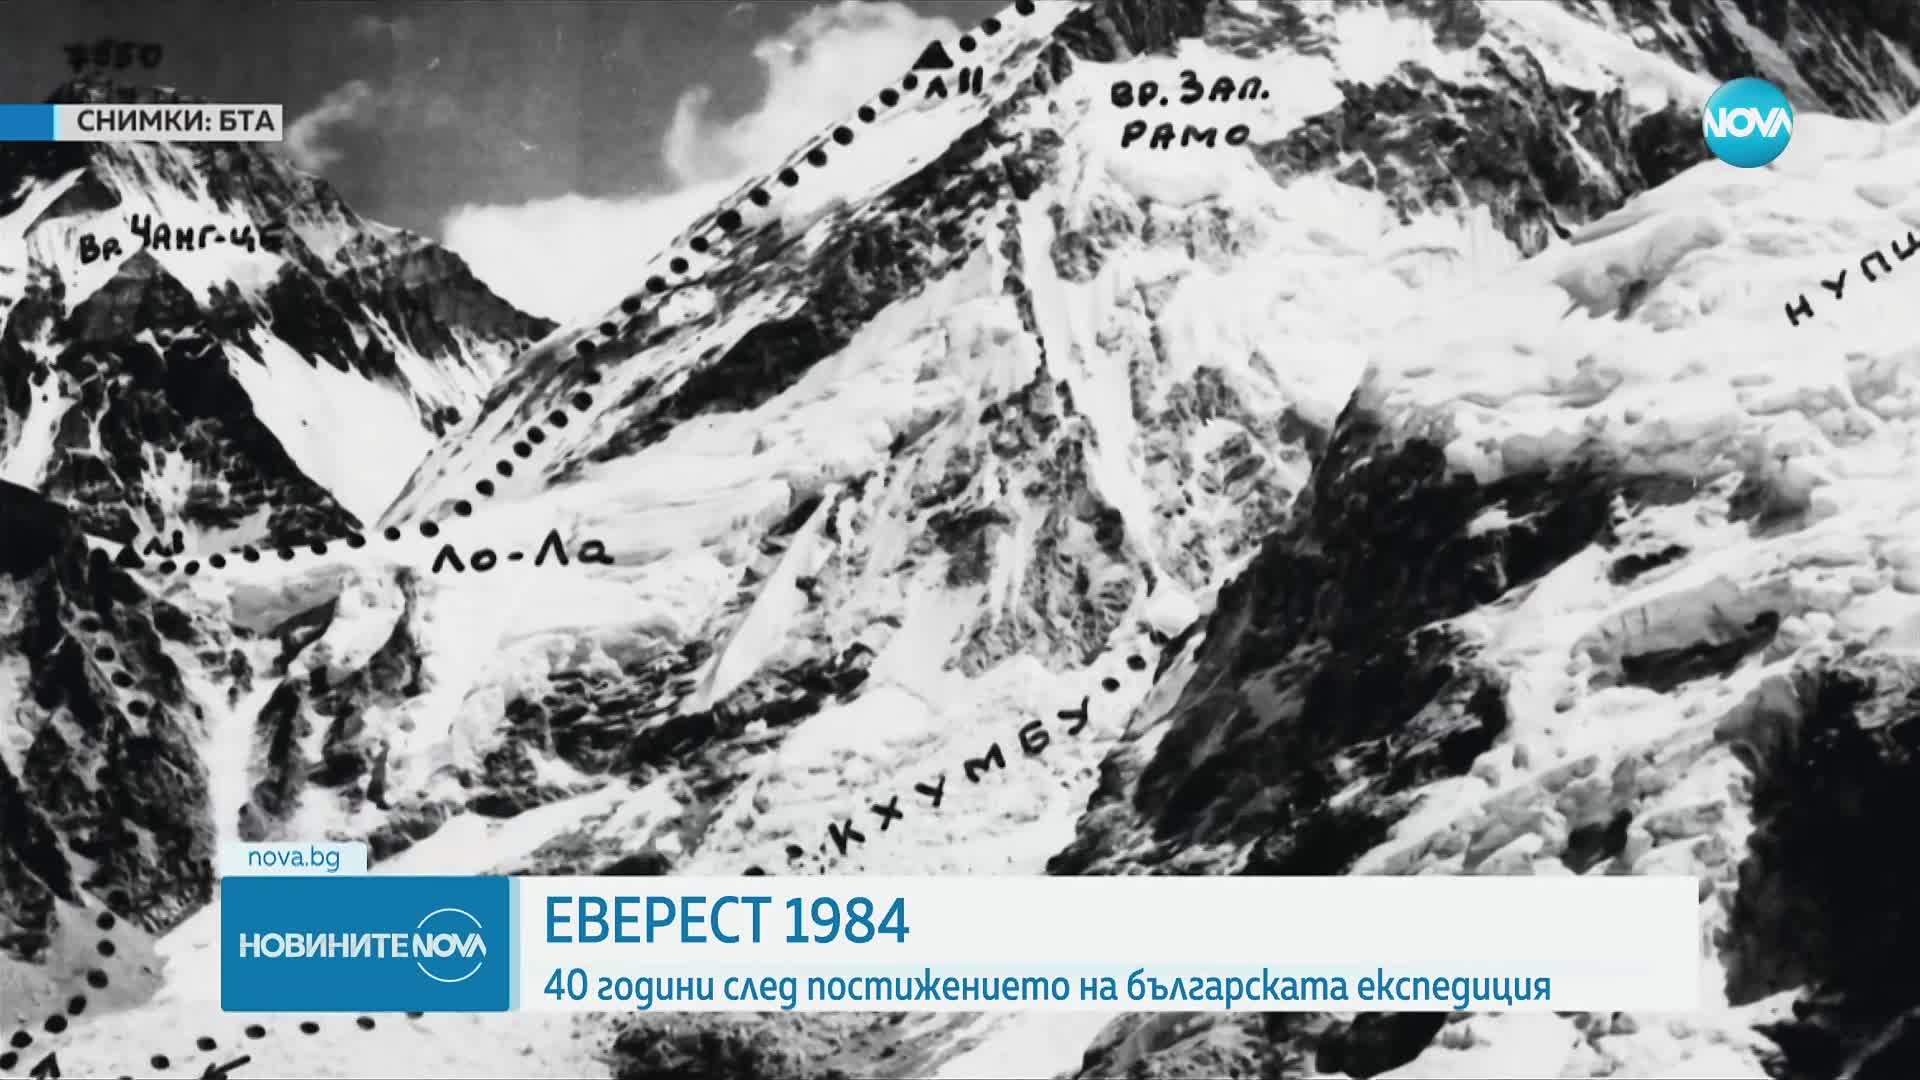 40 години след постижението на българската експедиция "Еверест 1984"